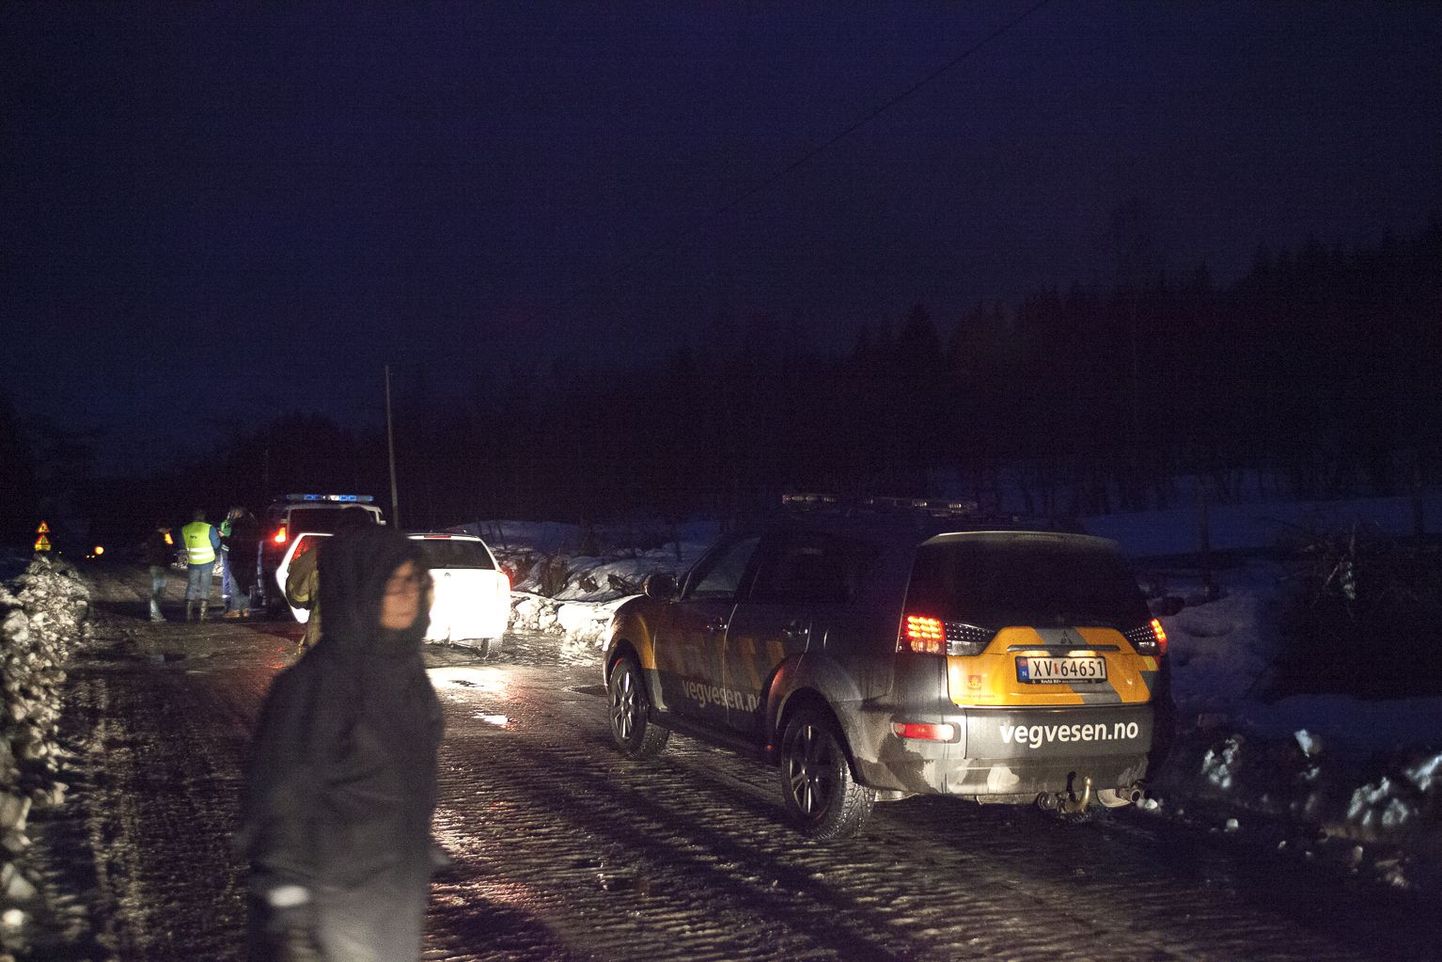 Norras plahvatas lõhkeaineid vedanud veoauto. Politsei sulges piirkonna 1000 meetri raadiuses